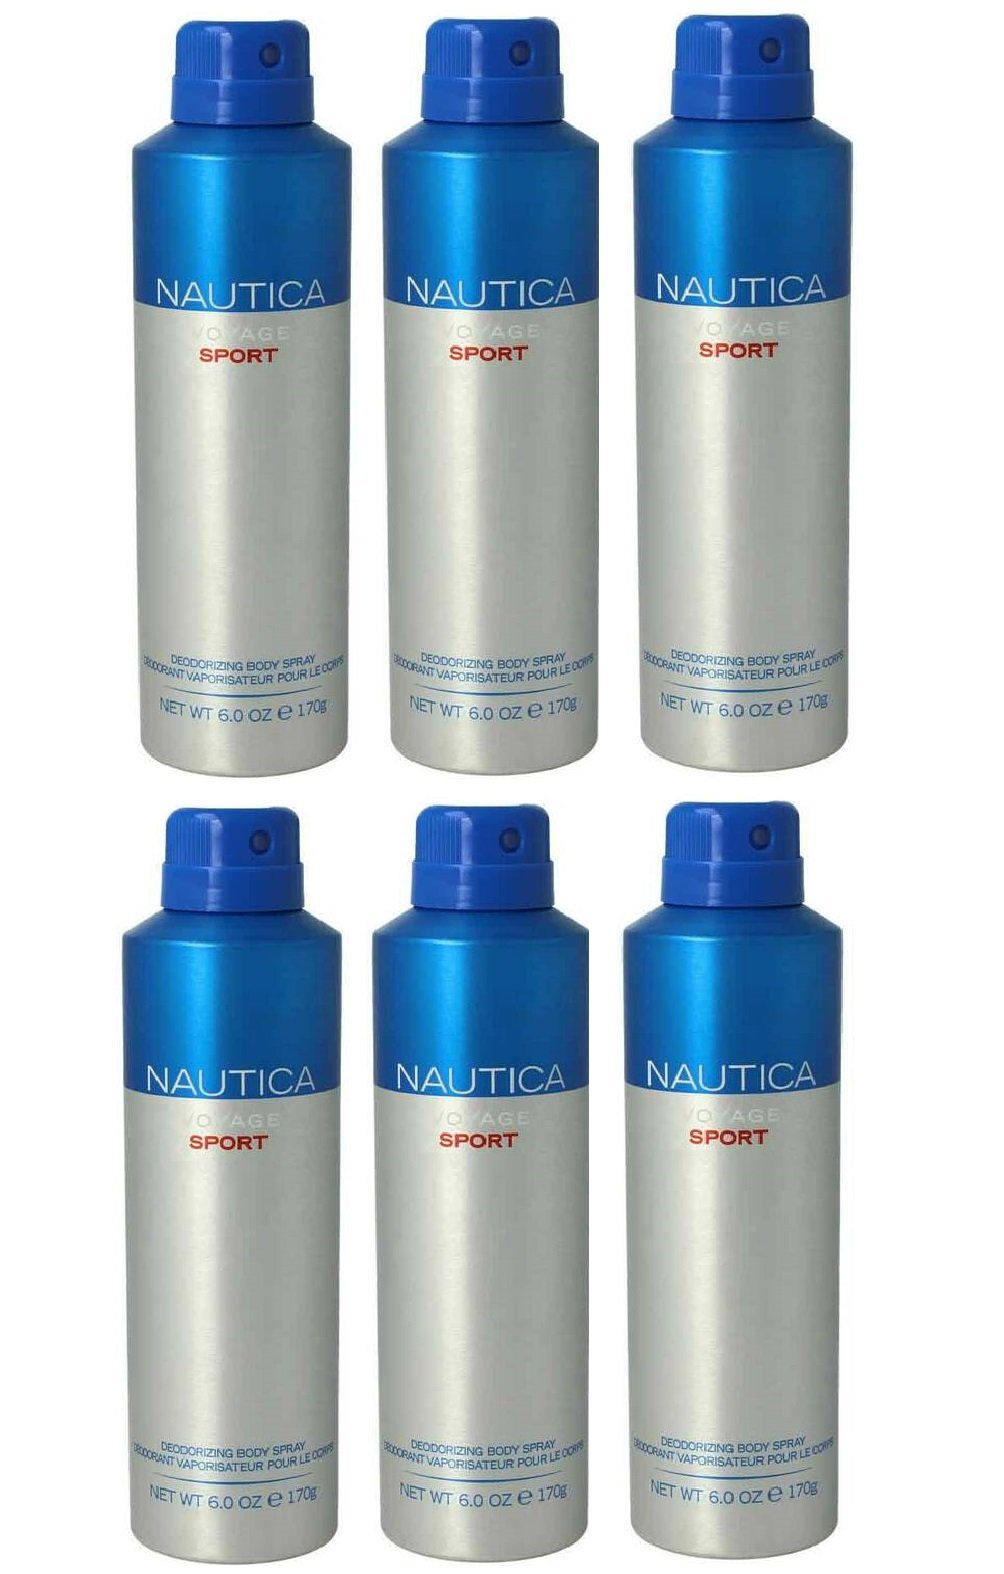 NAUTICA Bodyspray Voyage Sport Deo Spray Set Bodyspray Beauty Deodorant Männer 170ml, 6-tlg., 24 Stunden Schutz, Effektiver Schutz vor Körpergeruch